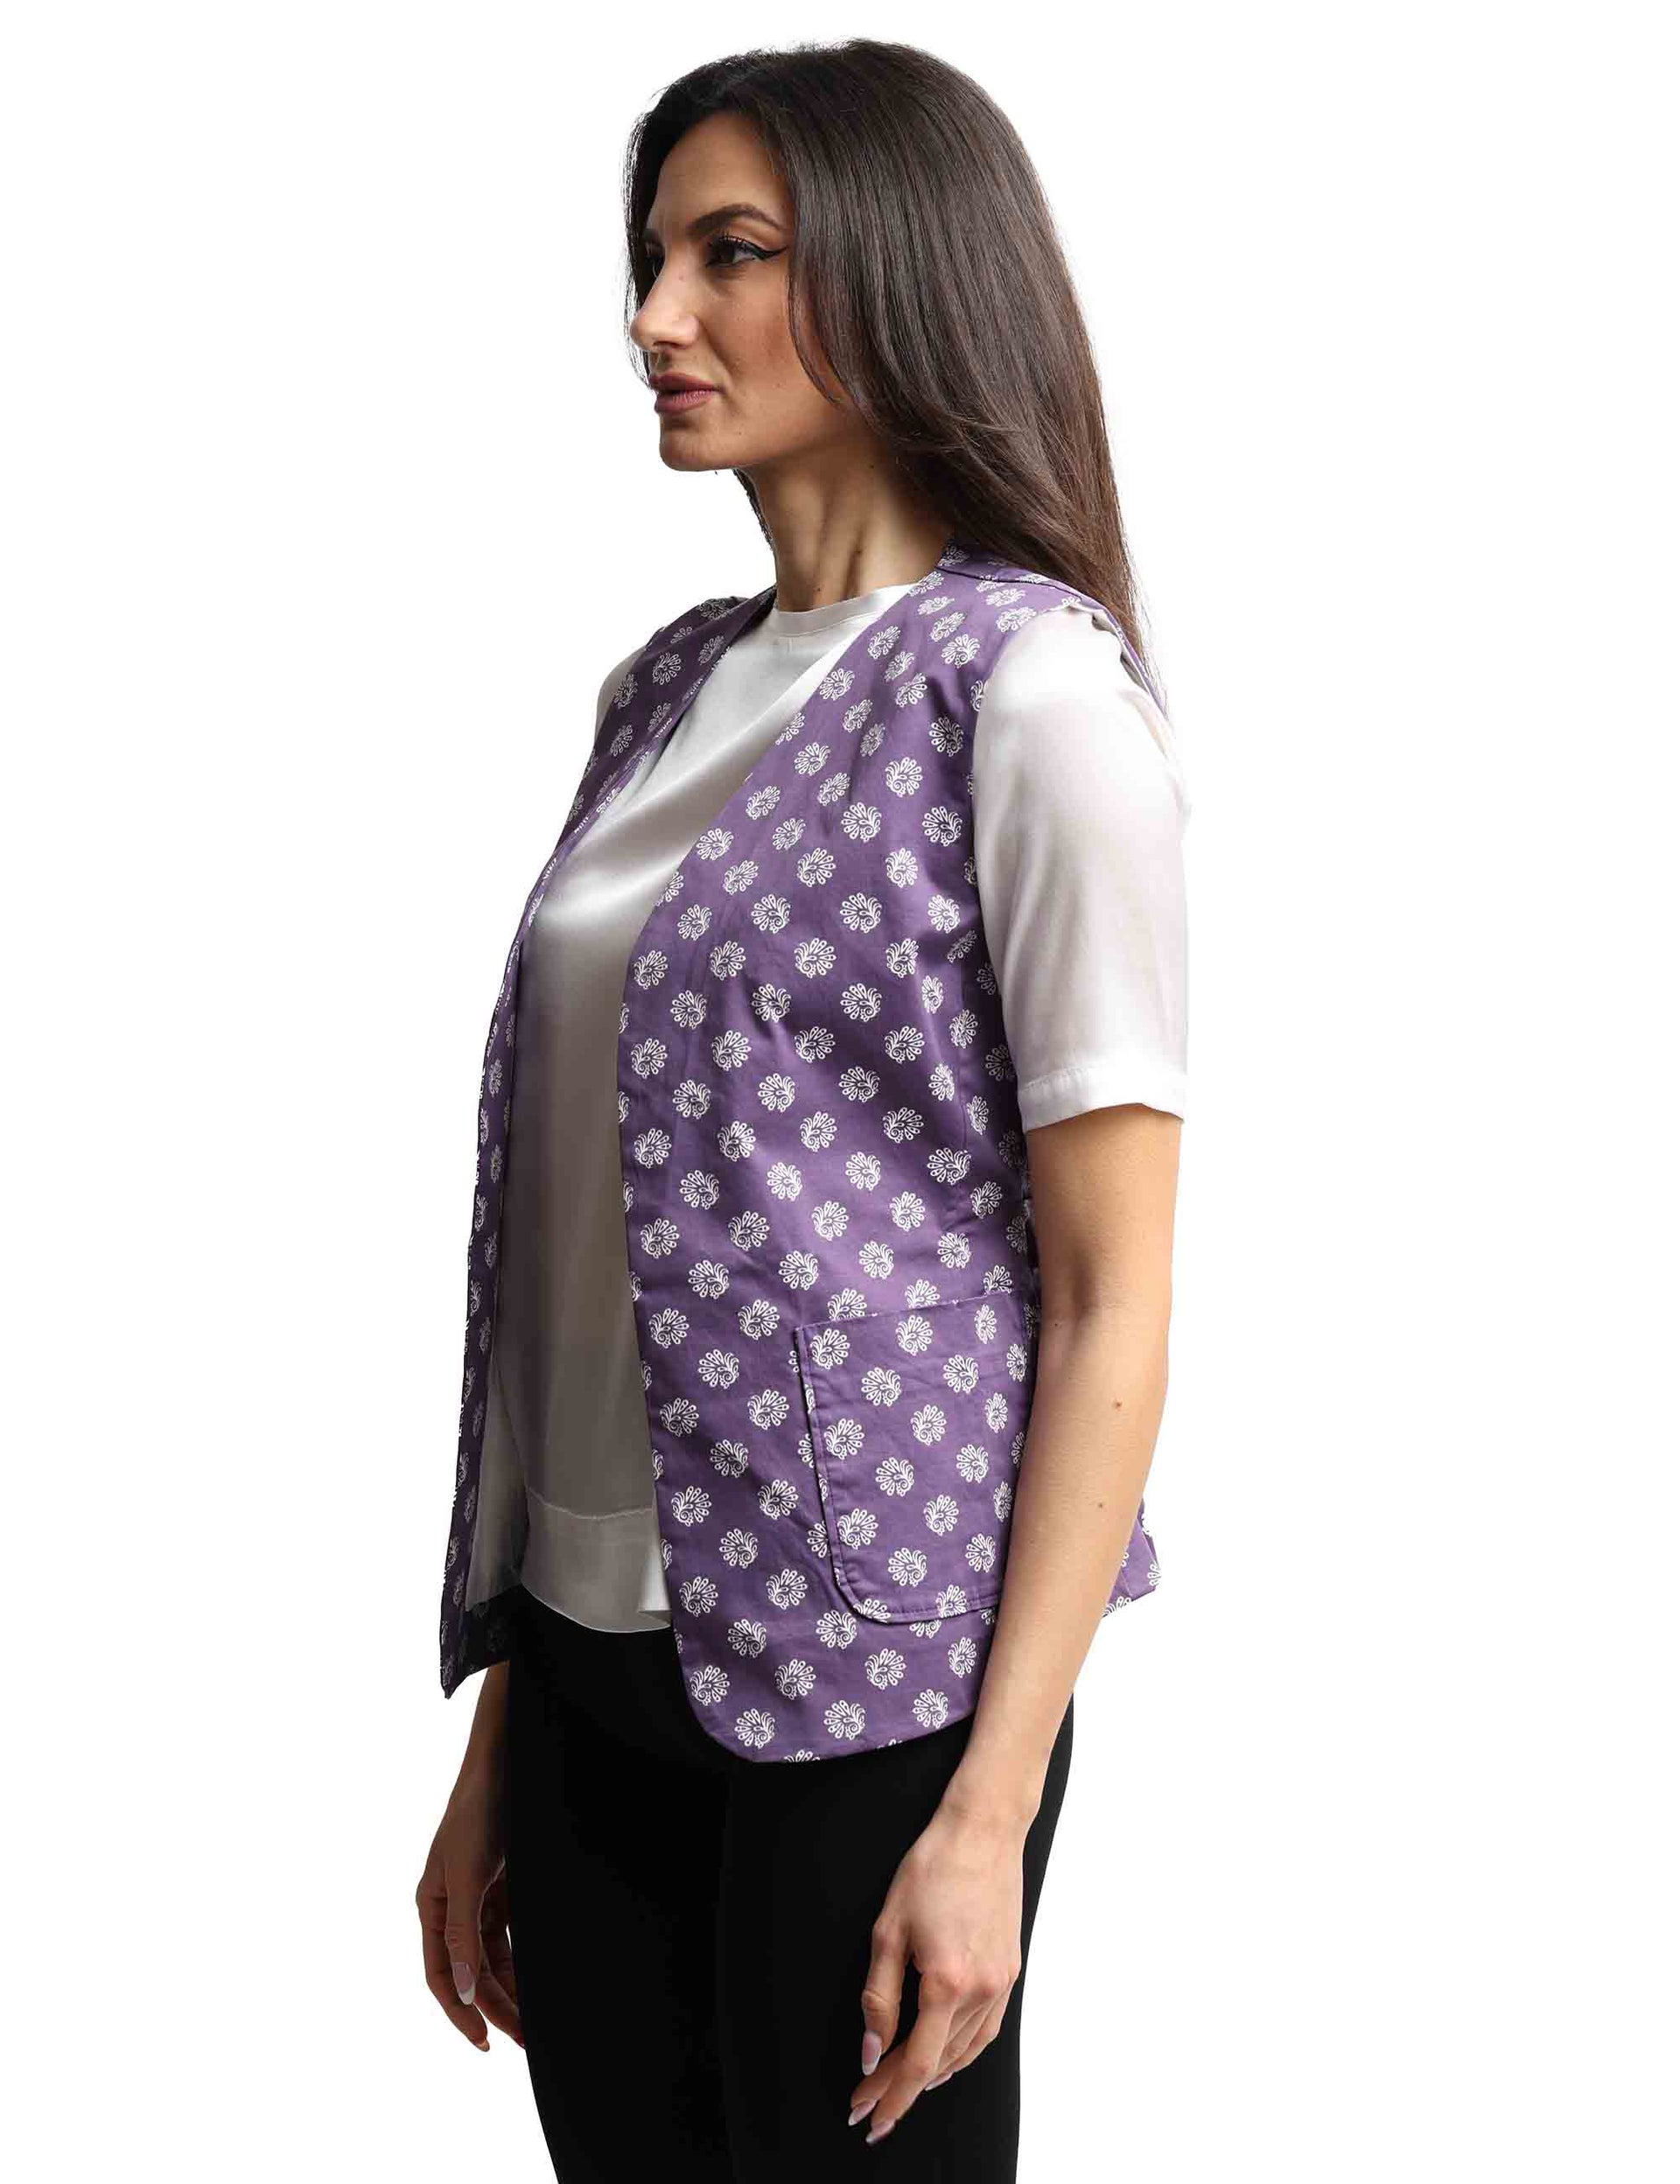 Decorated purple cotton women's vest